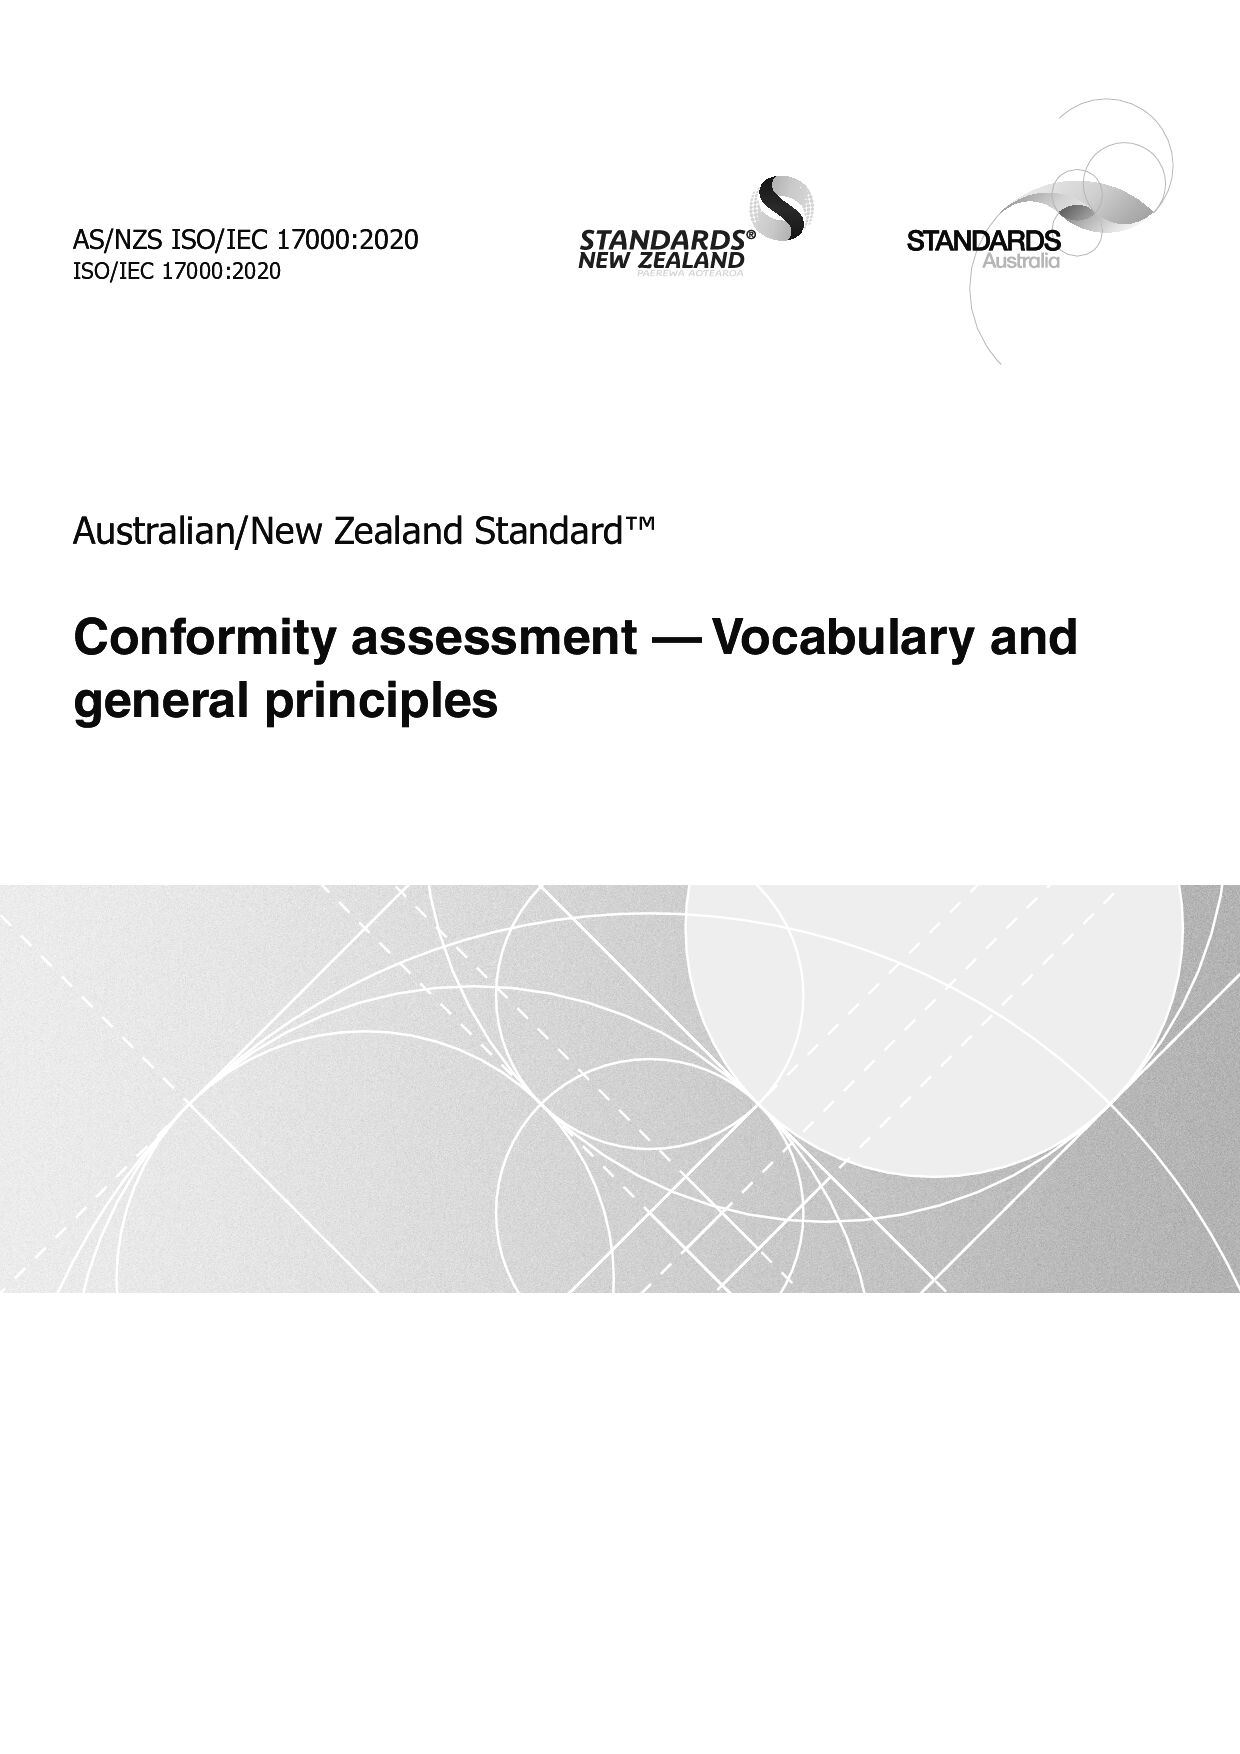 AS/NZS ISO/IEC 17000:2020封面图